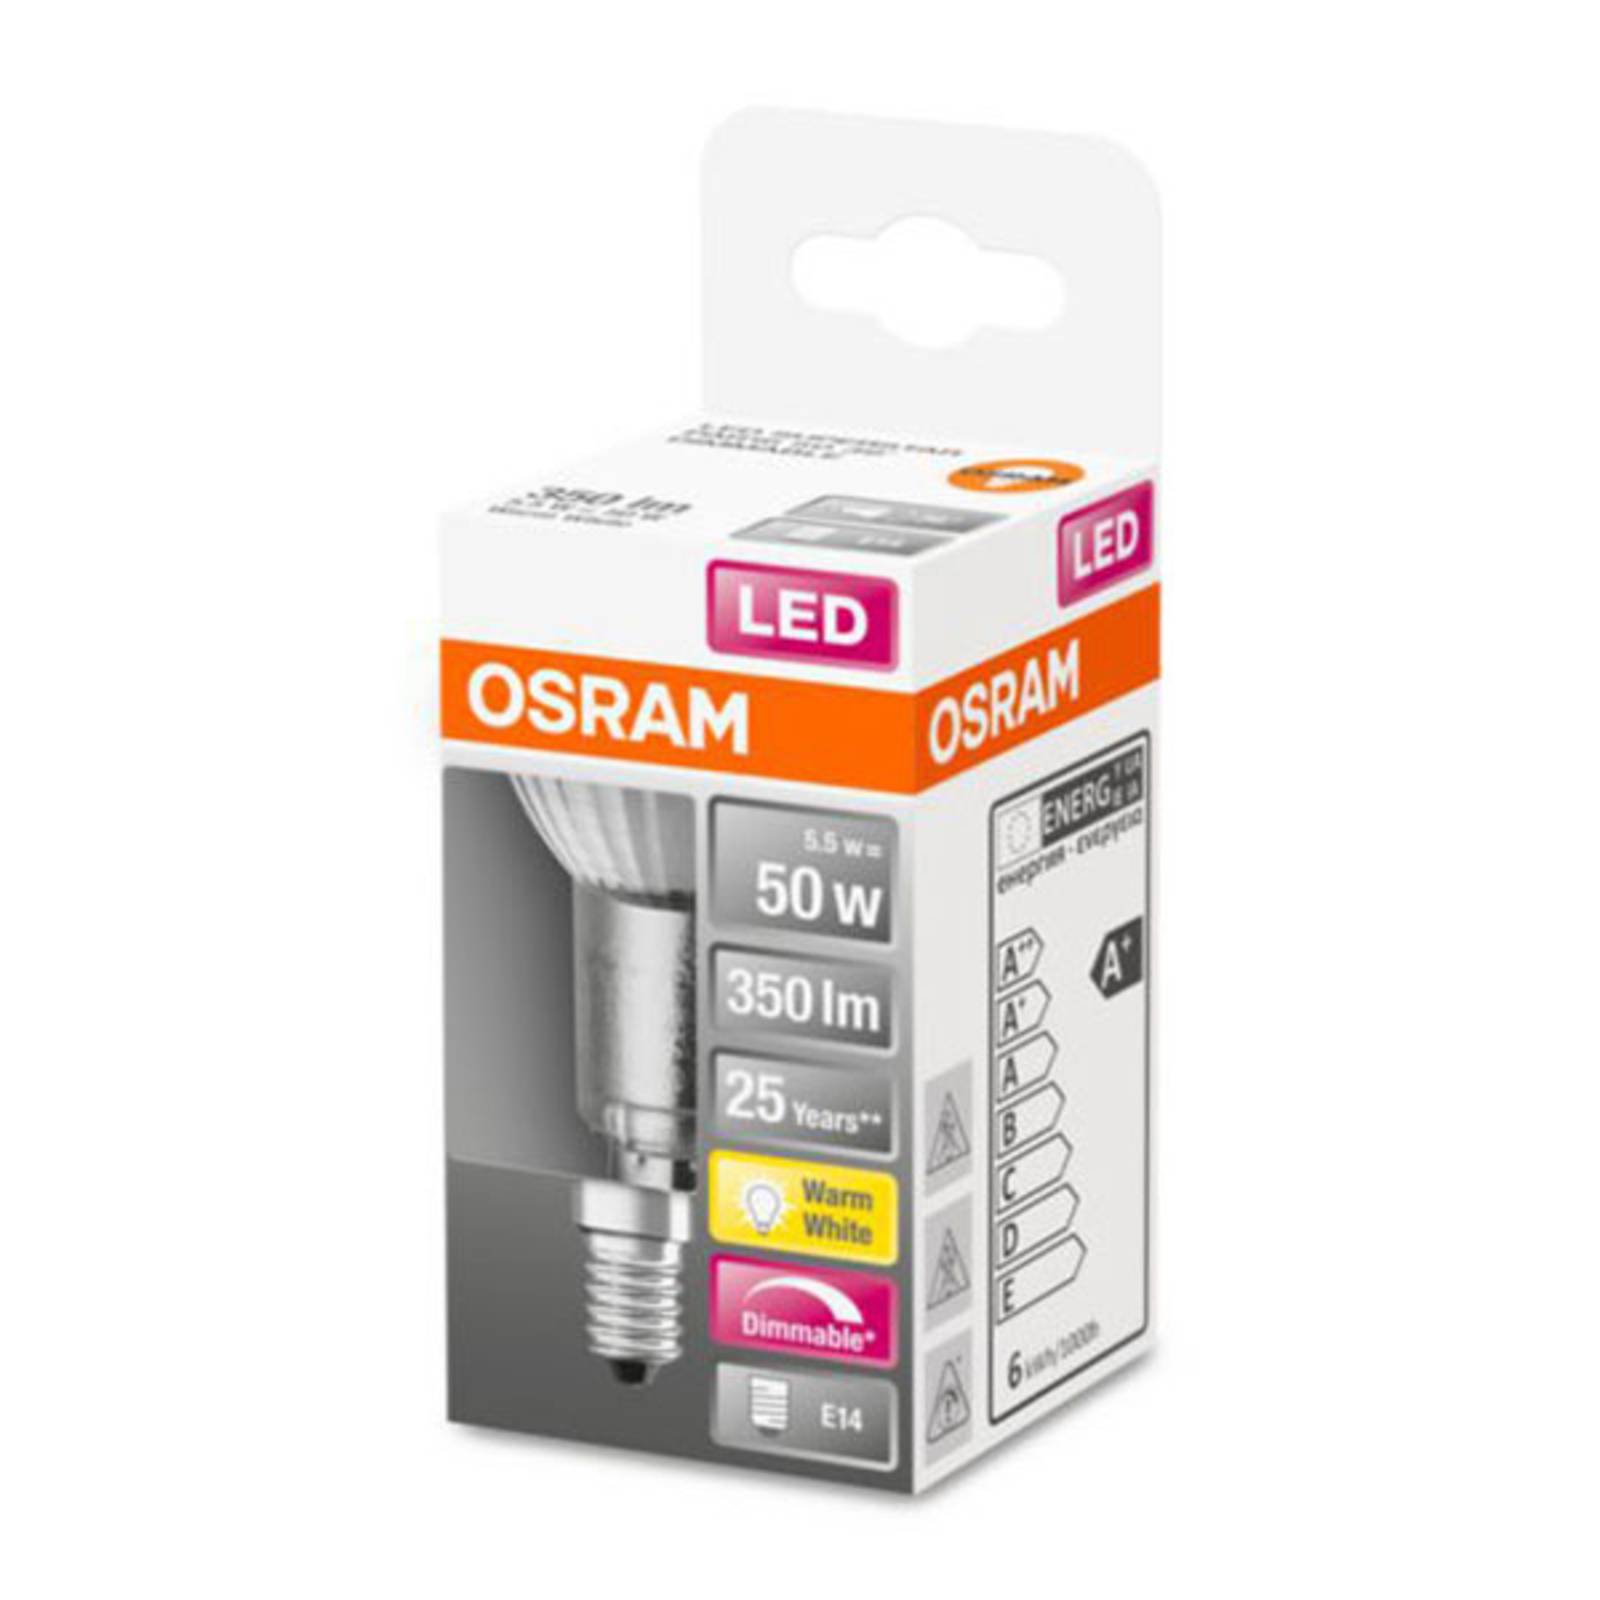 OSRAM OSRAM LED žárovka E14 4,8W PAR16 2700K stmívatelná